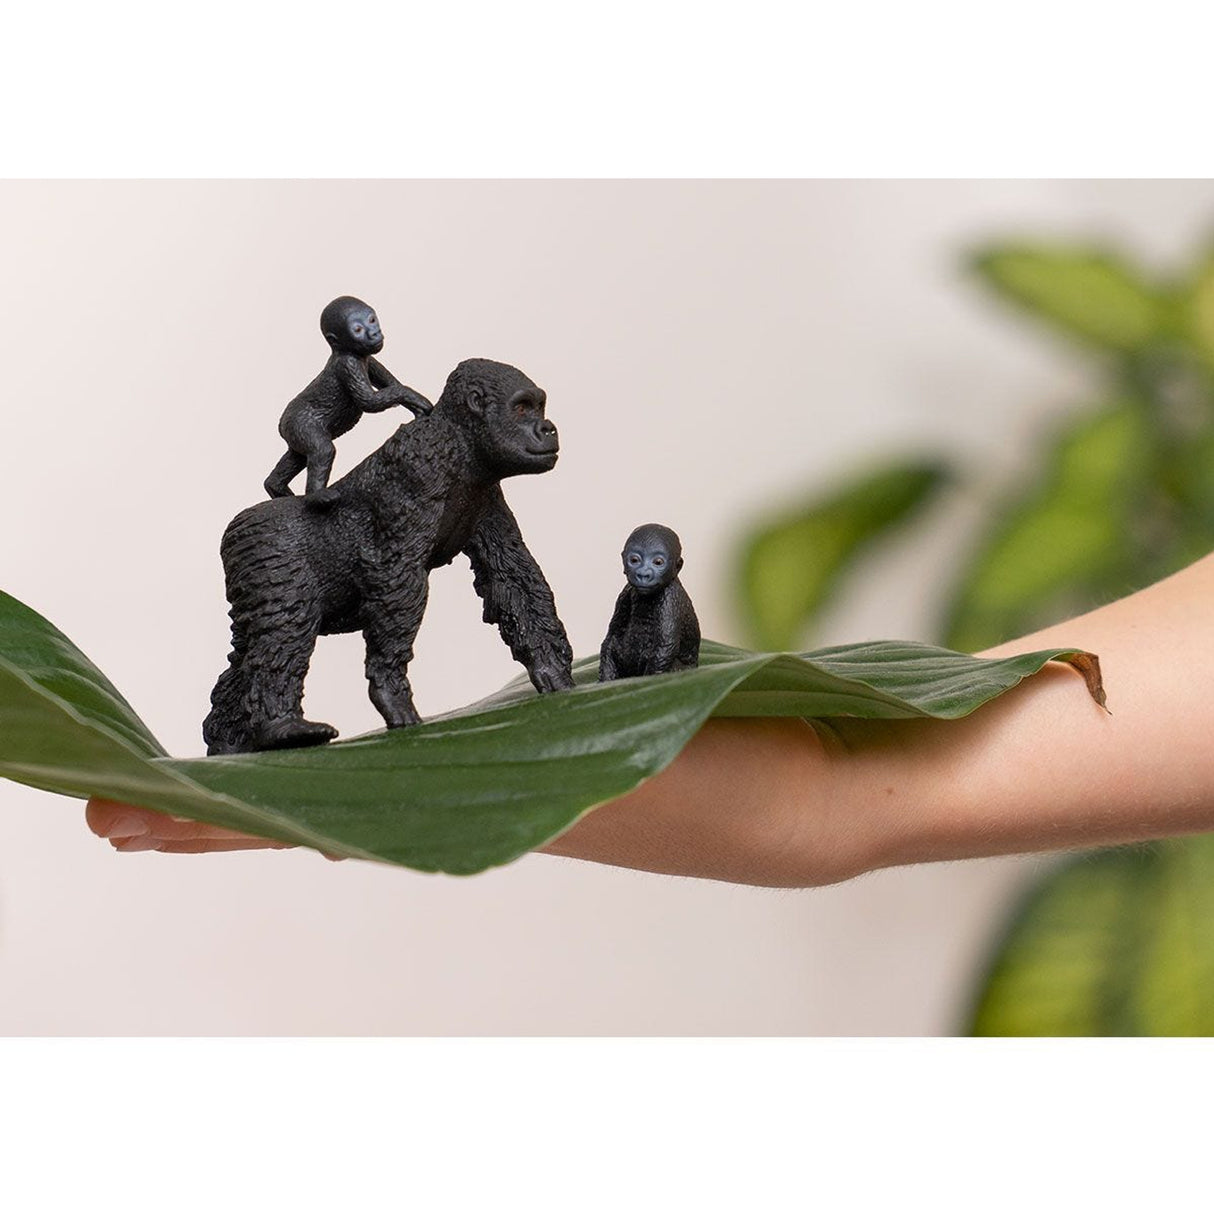 Schleich Gorilla Family Animal Toy